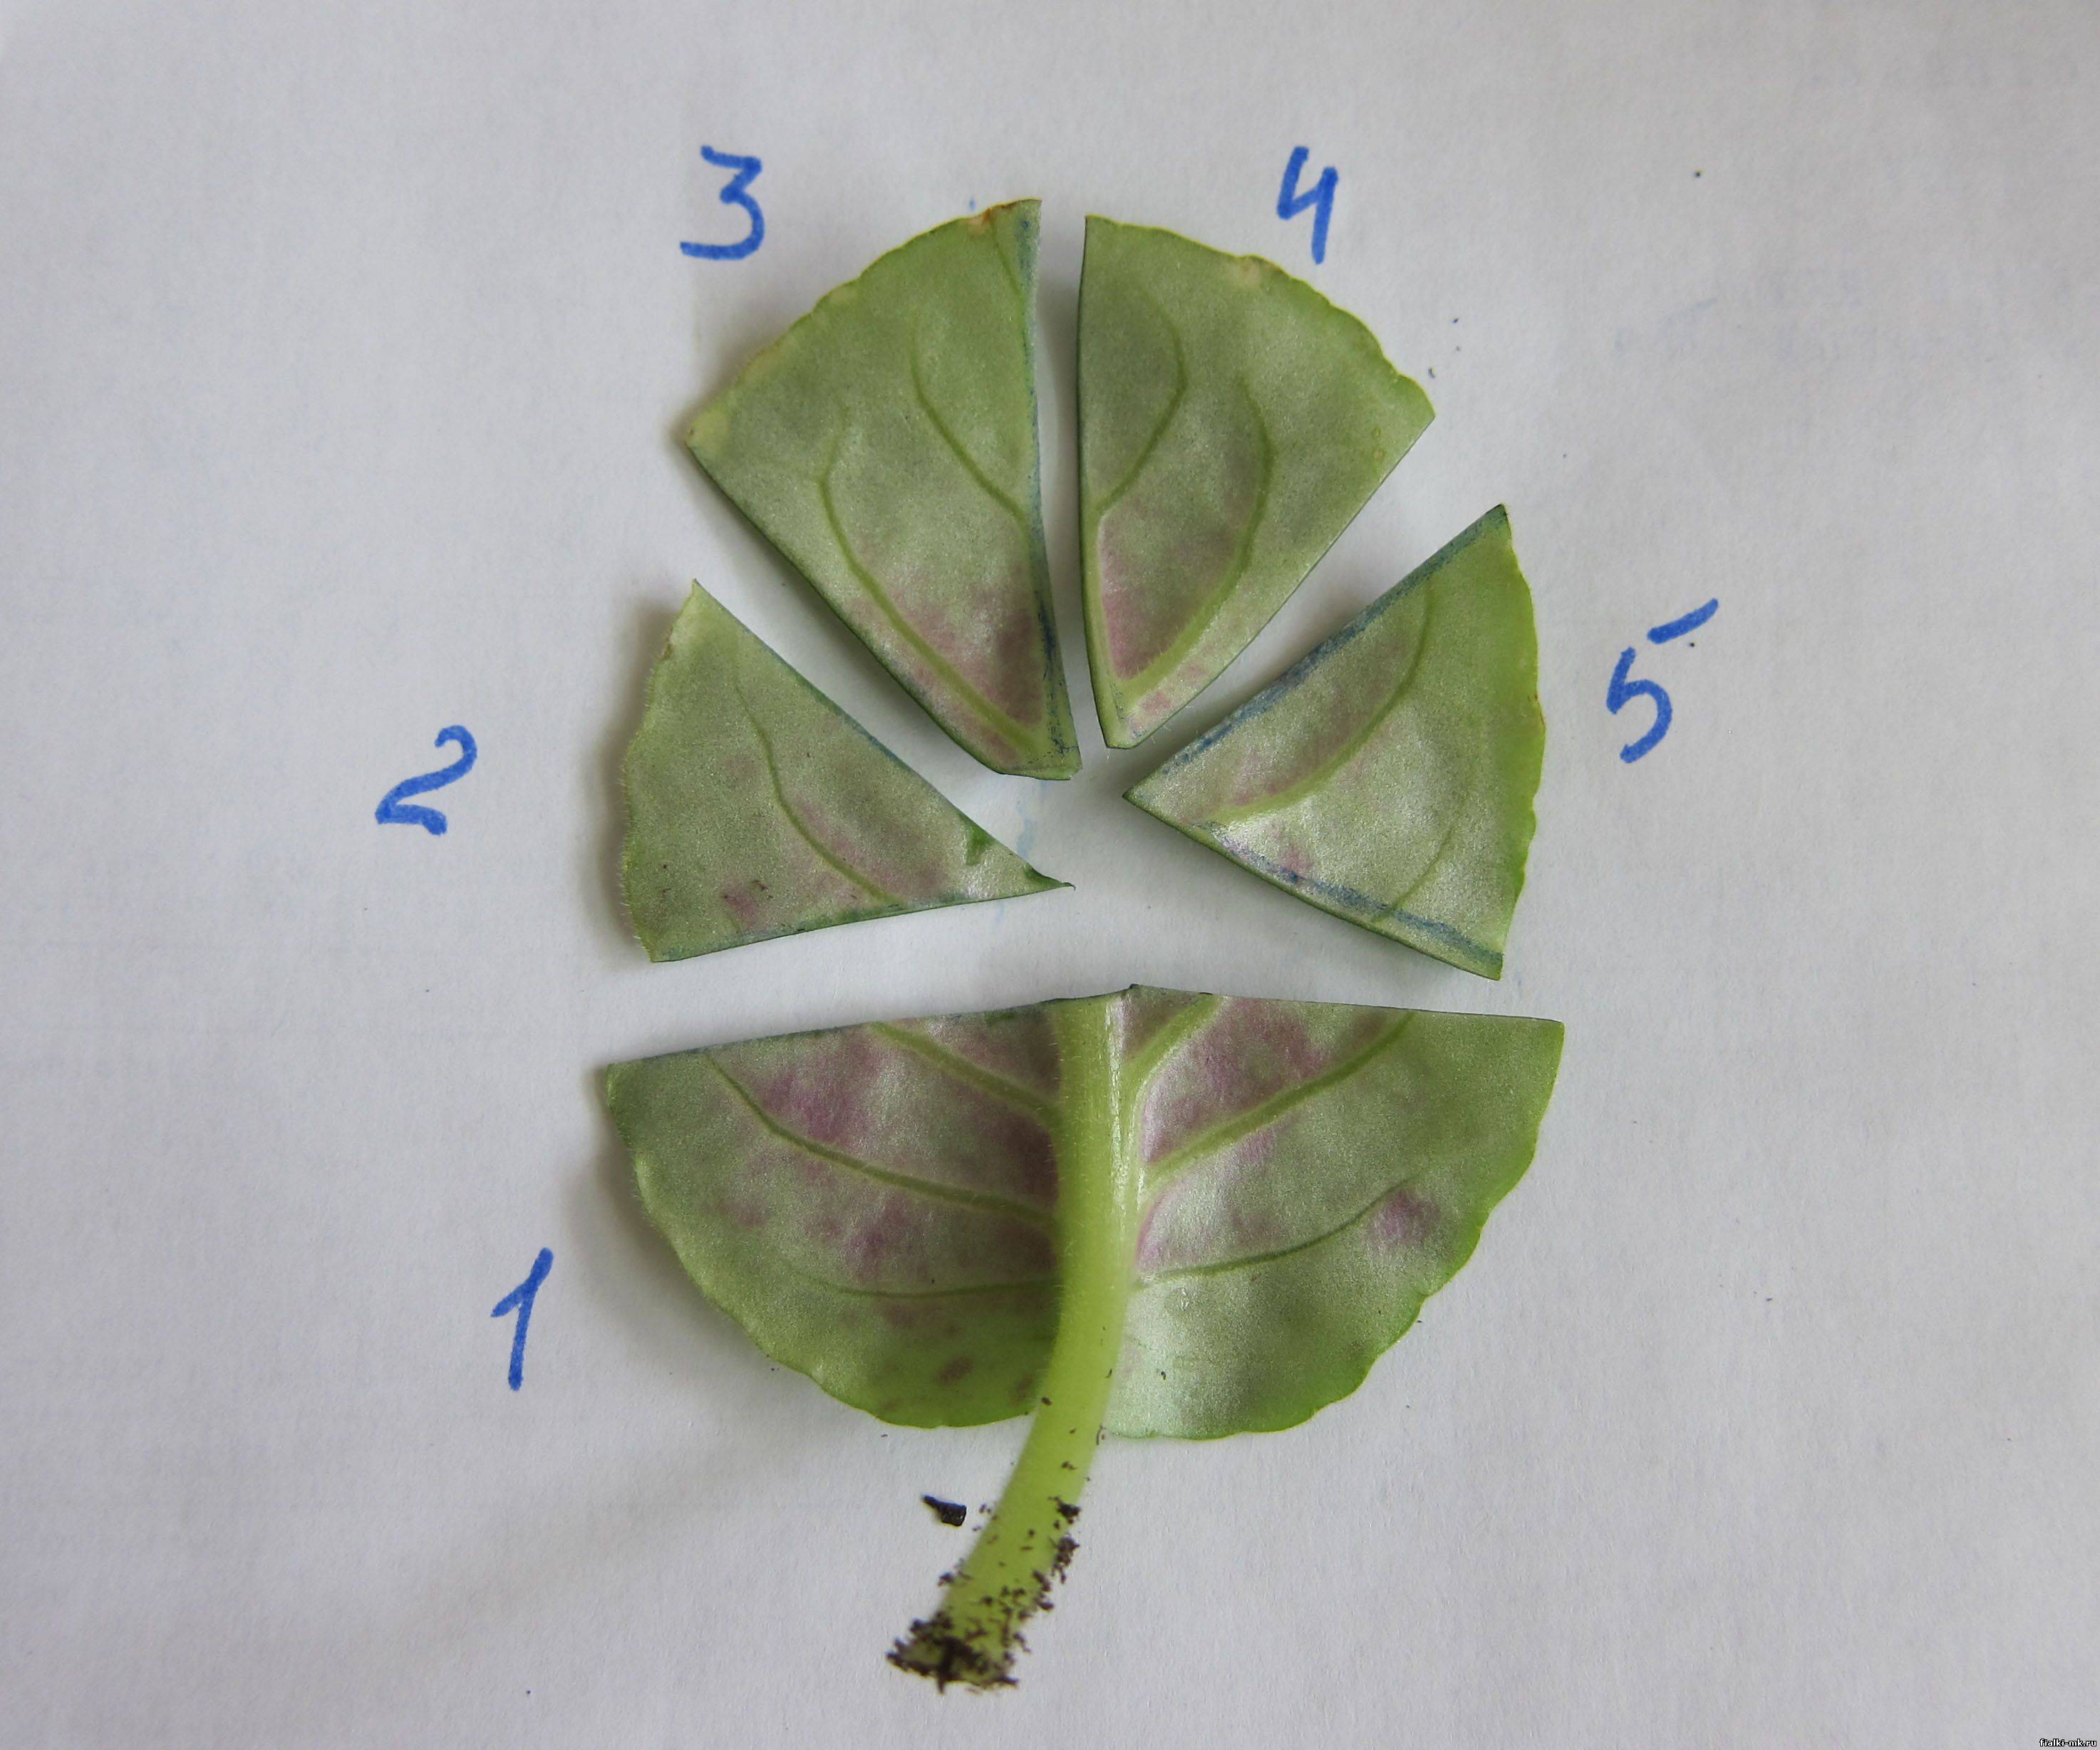 Фиалки: размножение листом и делением, и как правильно рассадить в домашних условиях, как часто и чем поливать, каким удобрением подкормить, когда пересаживать?